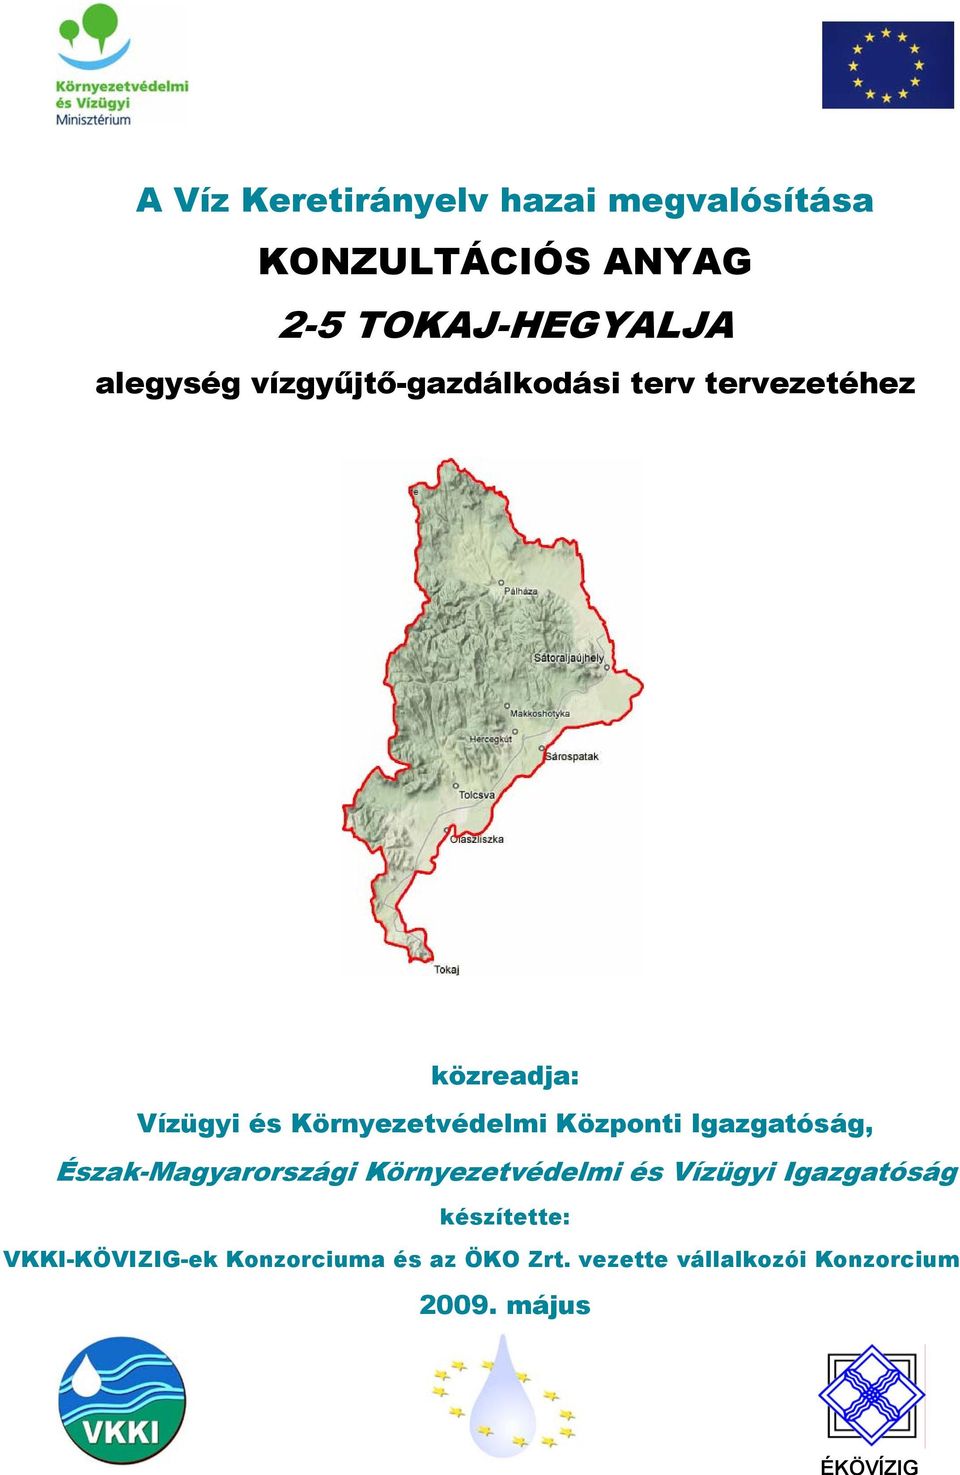 Központi Igazgatóság, Észak-Magyarországi Környezetvédelmi és Vízügyi Igazgatóság